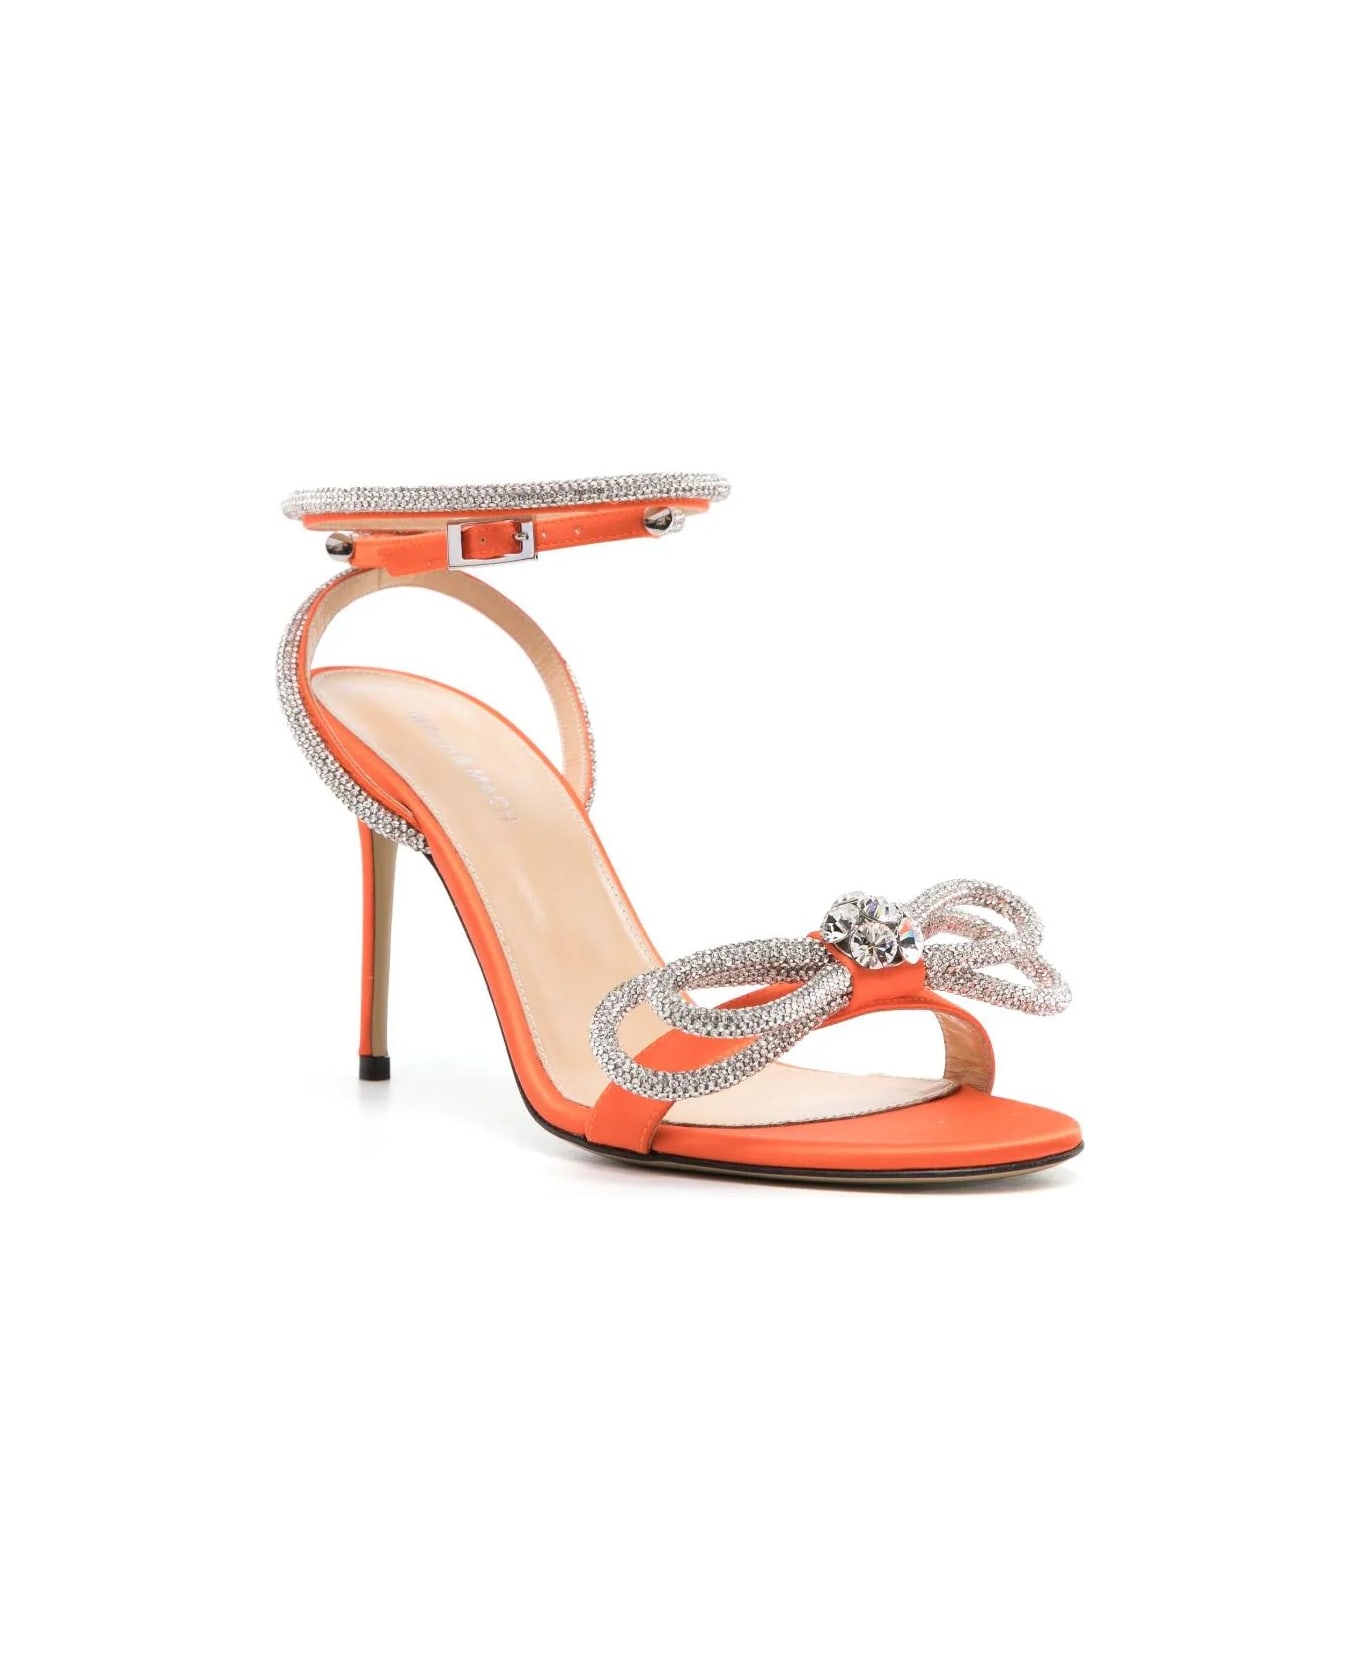 Mach & Mach Double Bow 95 Mm Sandals In Orange Satin With Crystals - Orange